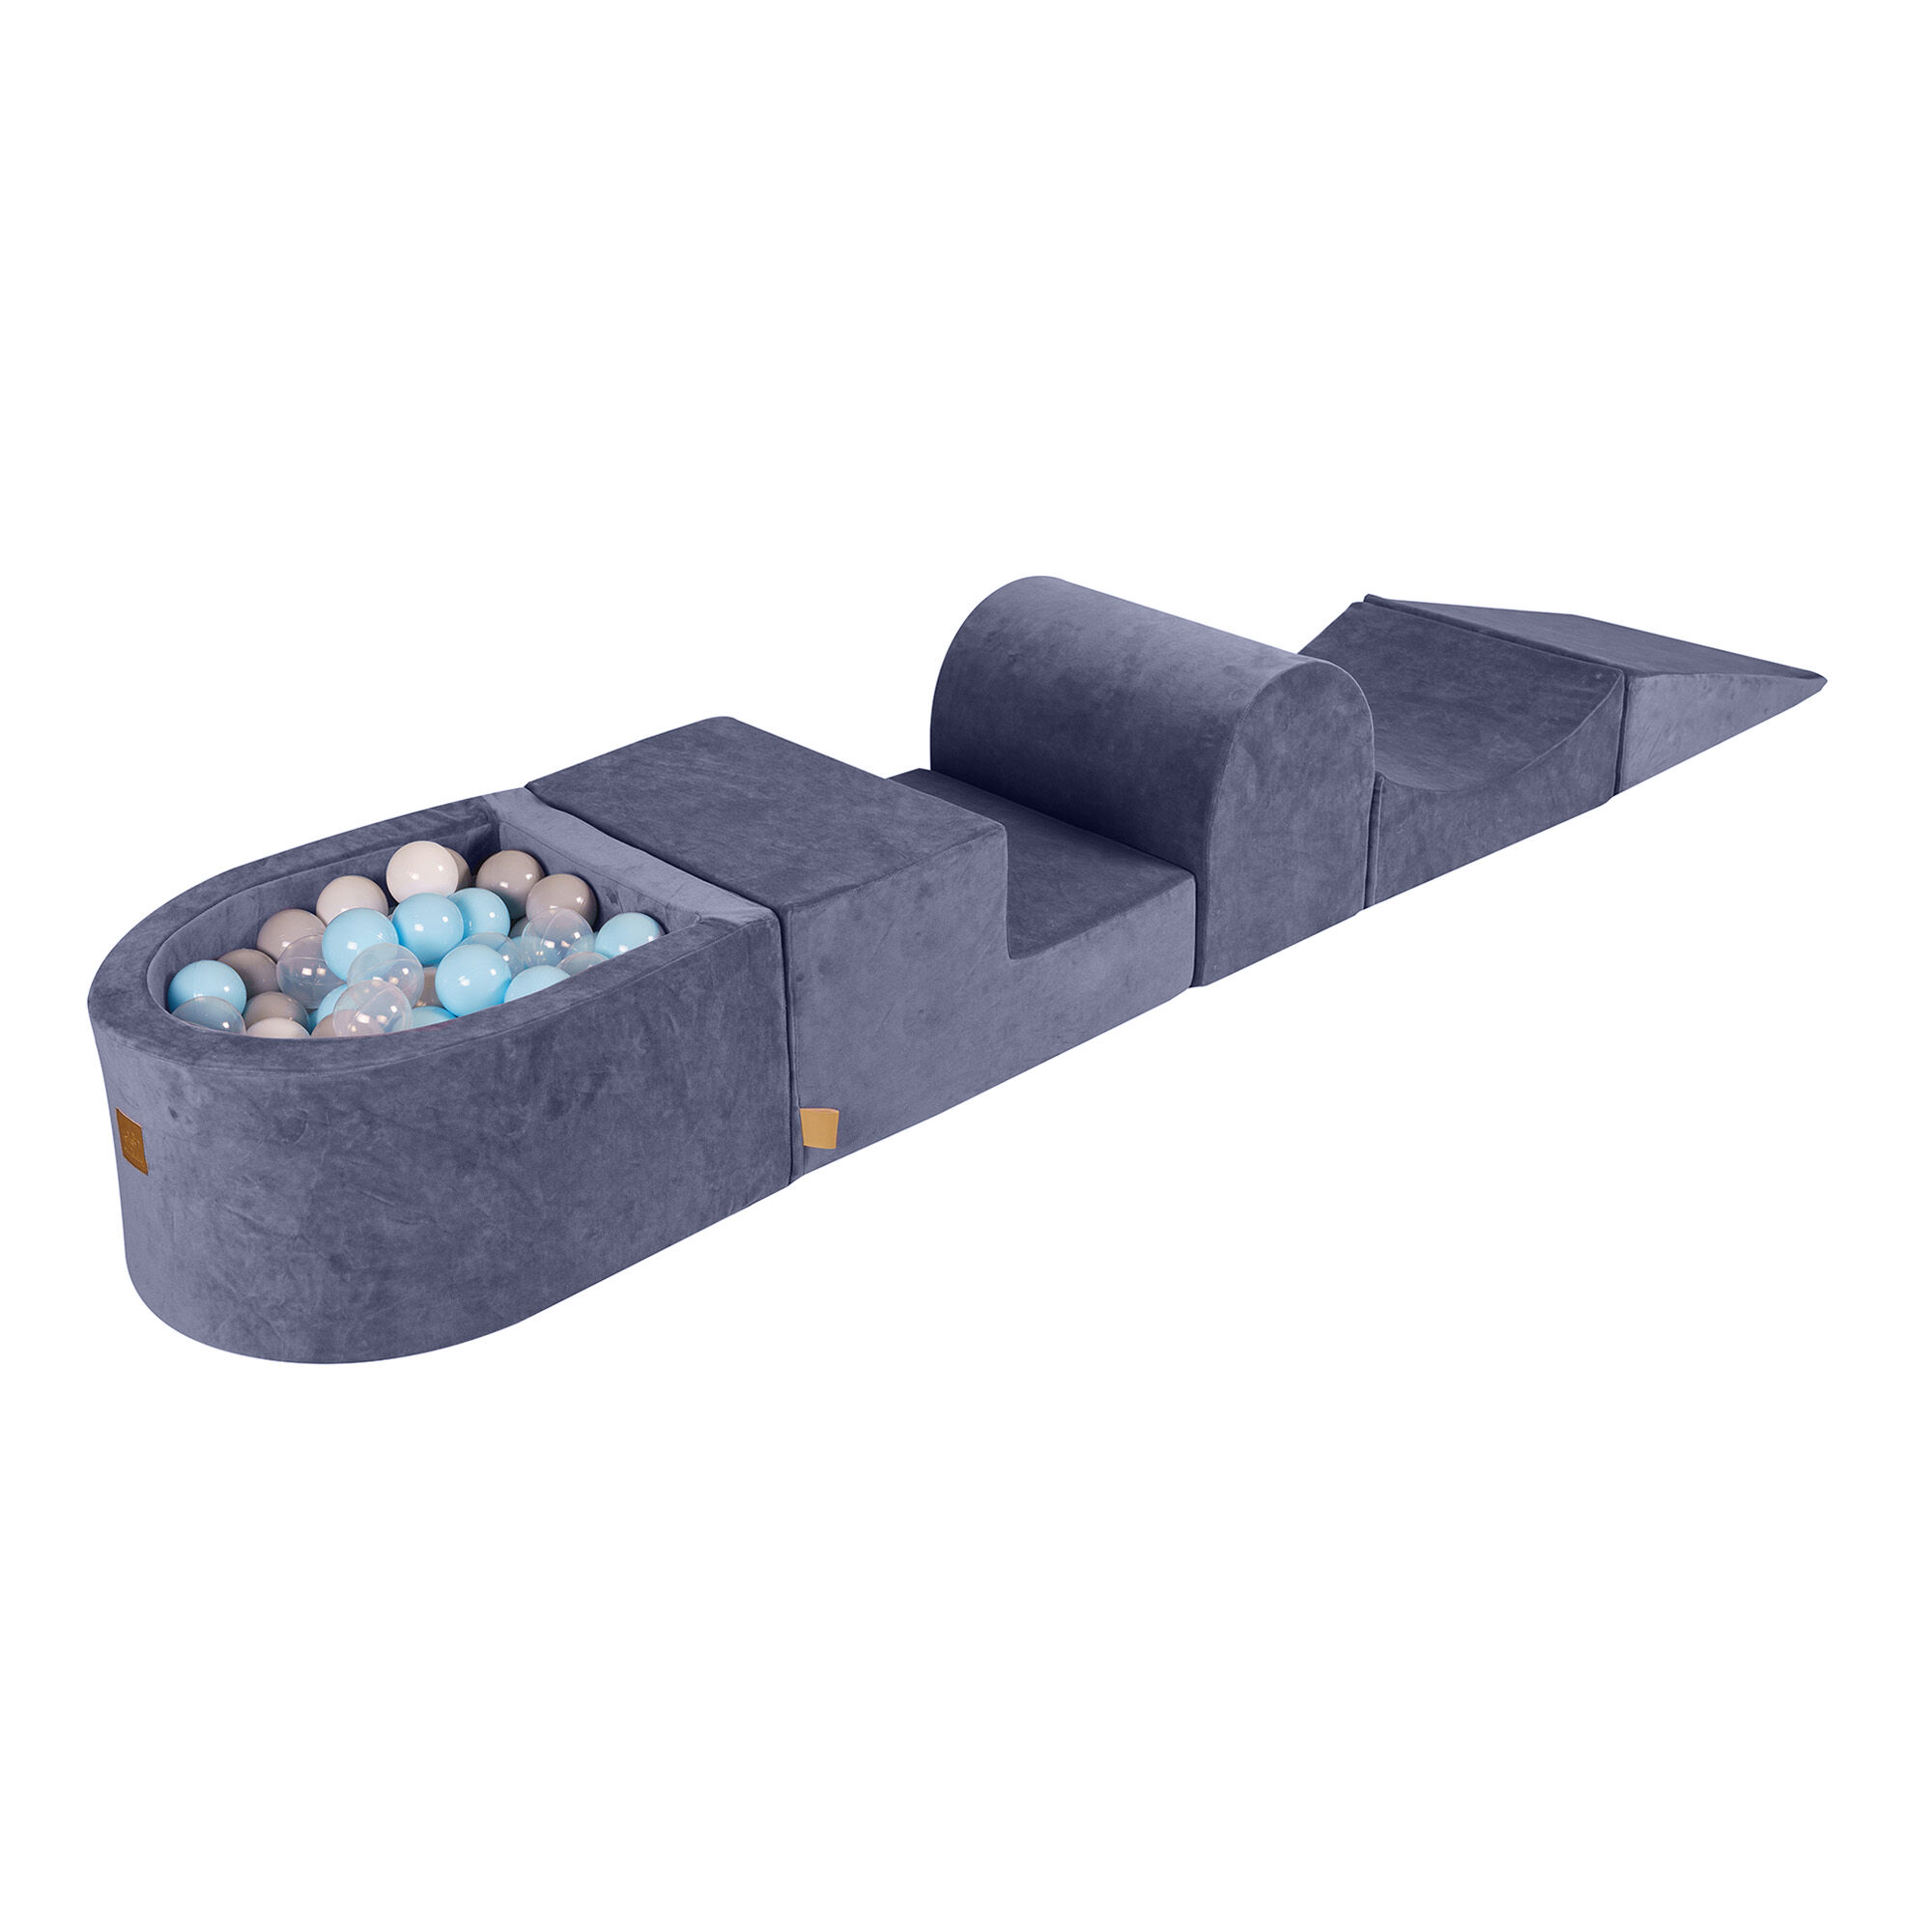 MeowBaby Juegos de espuma piscina de bola Bebe Azul/Gris/Blanc/Transparente W45